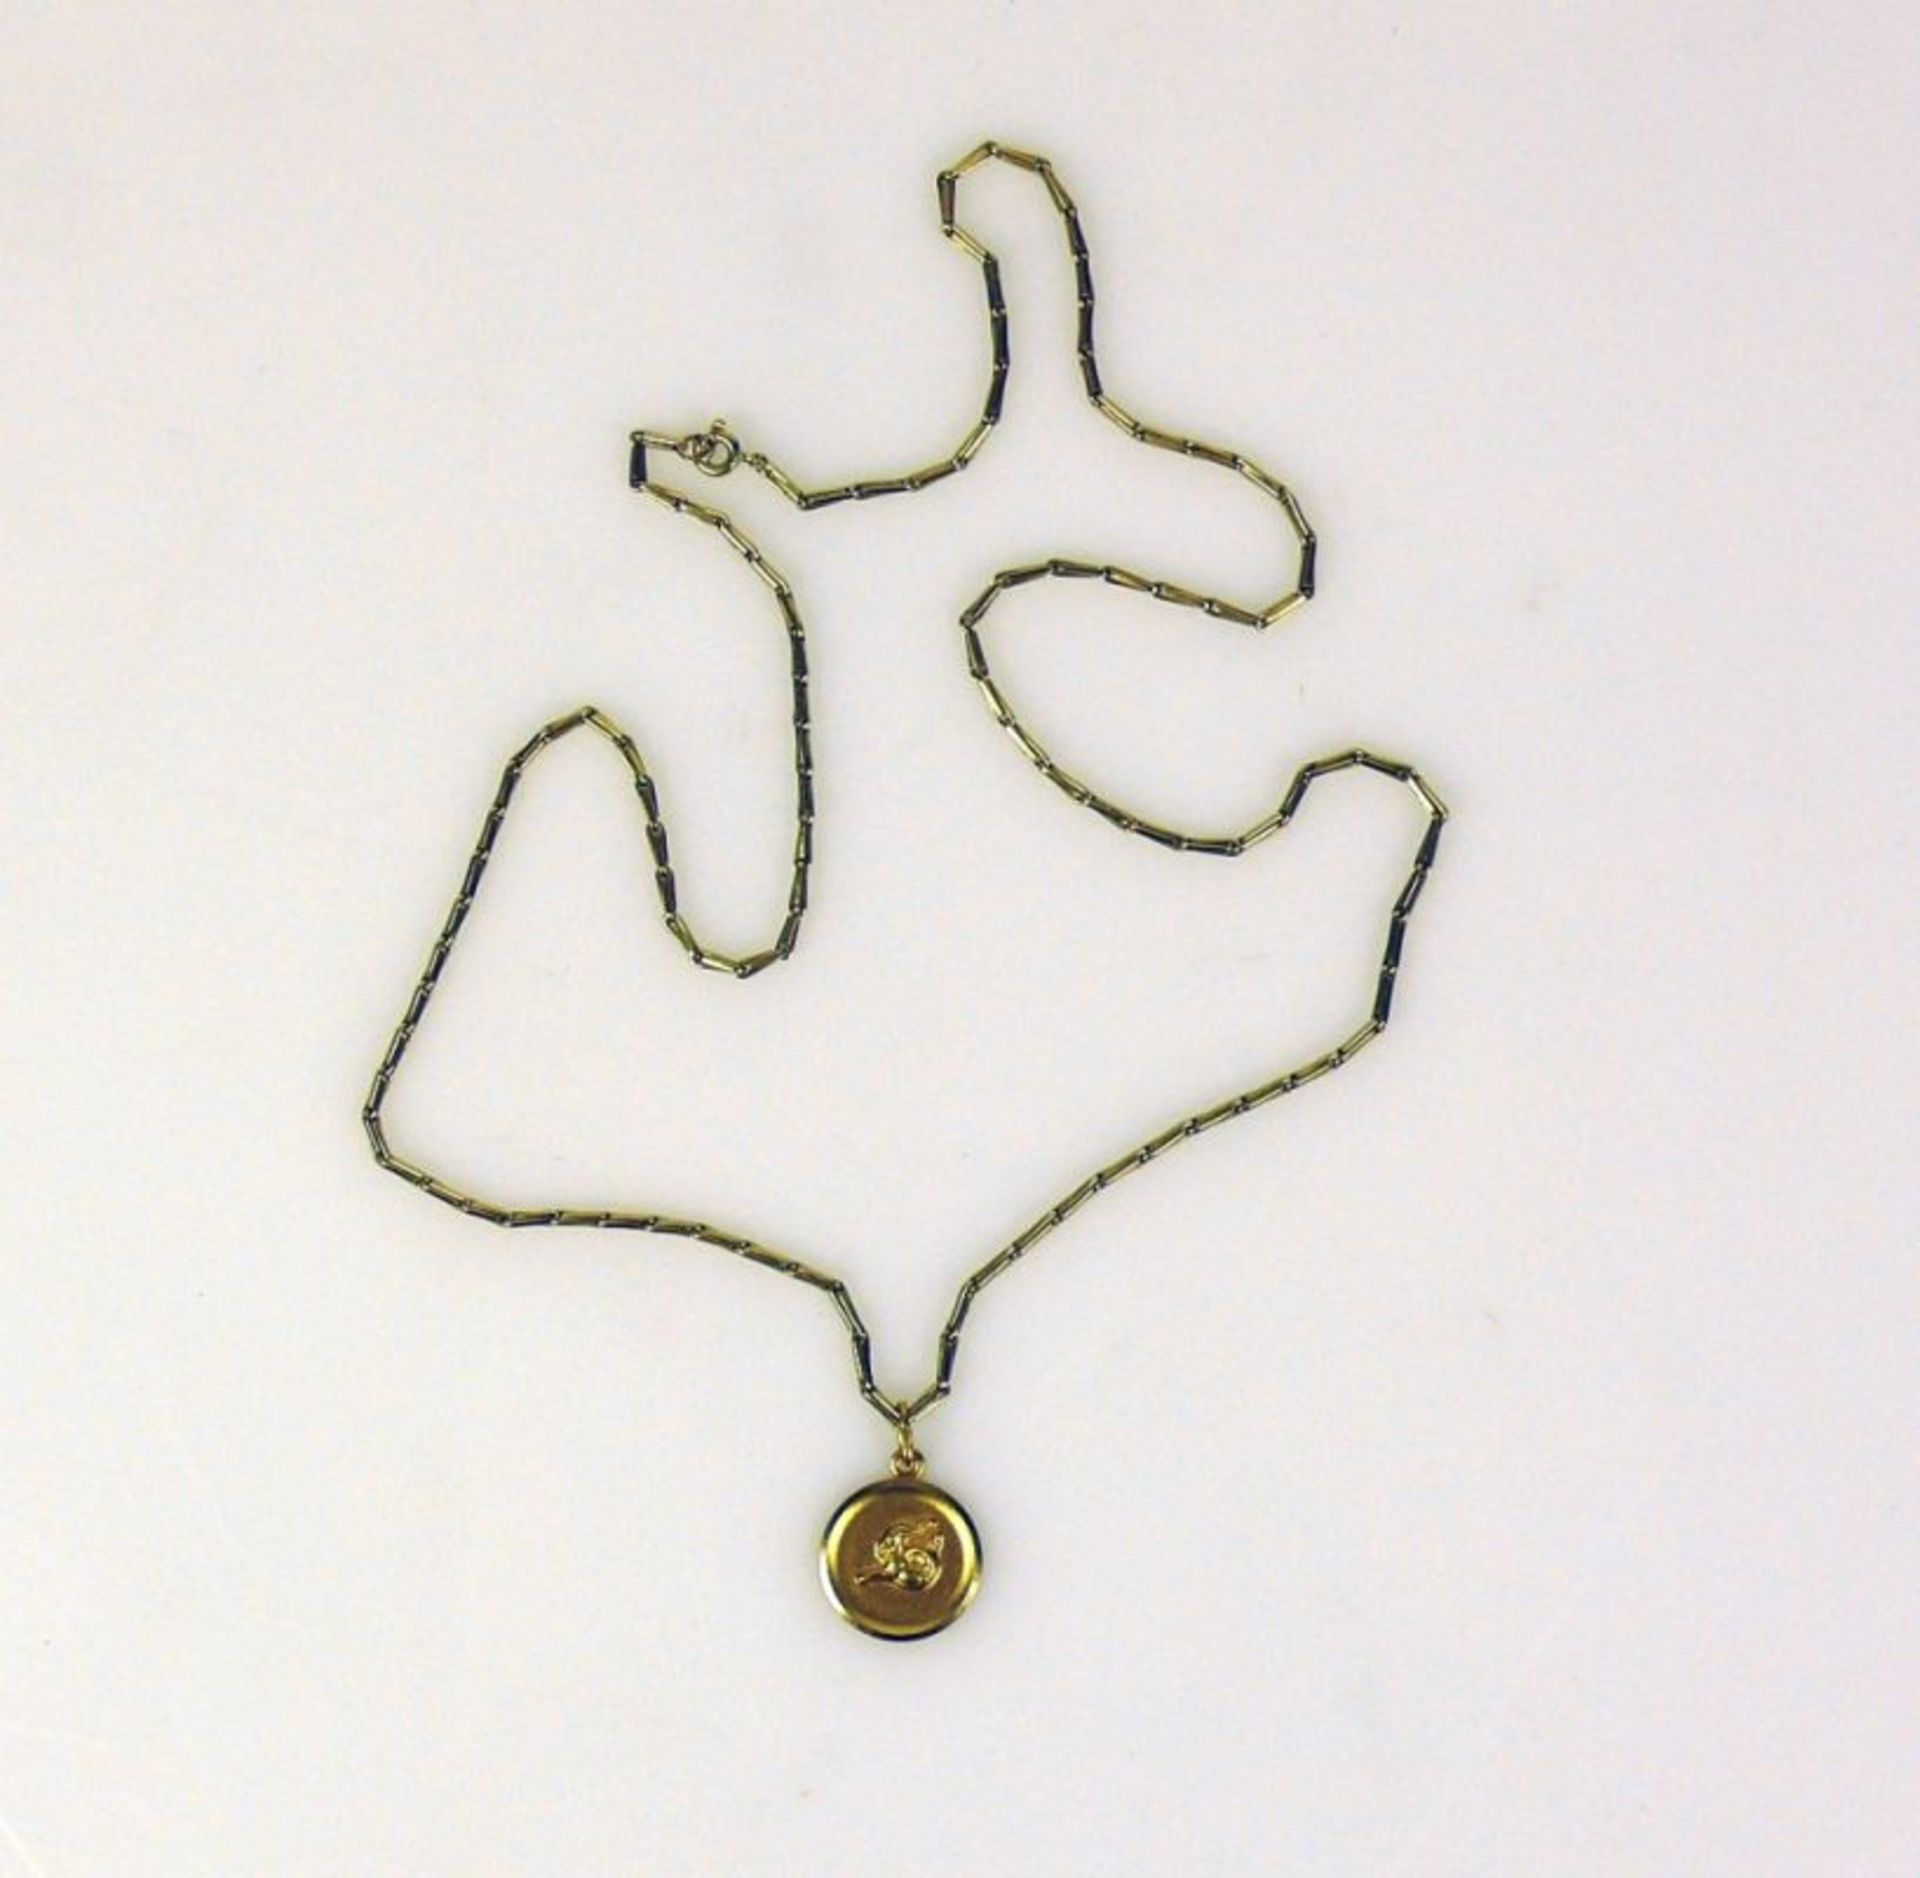 Halskette mit Anhängerje 18ct GG; Kette in Stabform; zus. 13,4g; L: ca. 54 cm